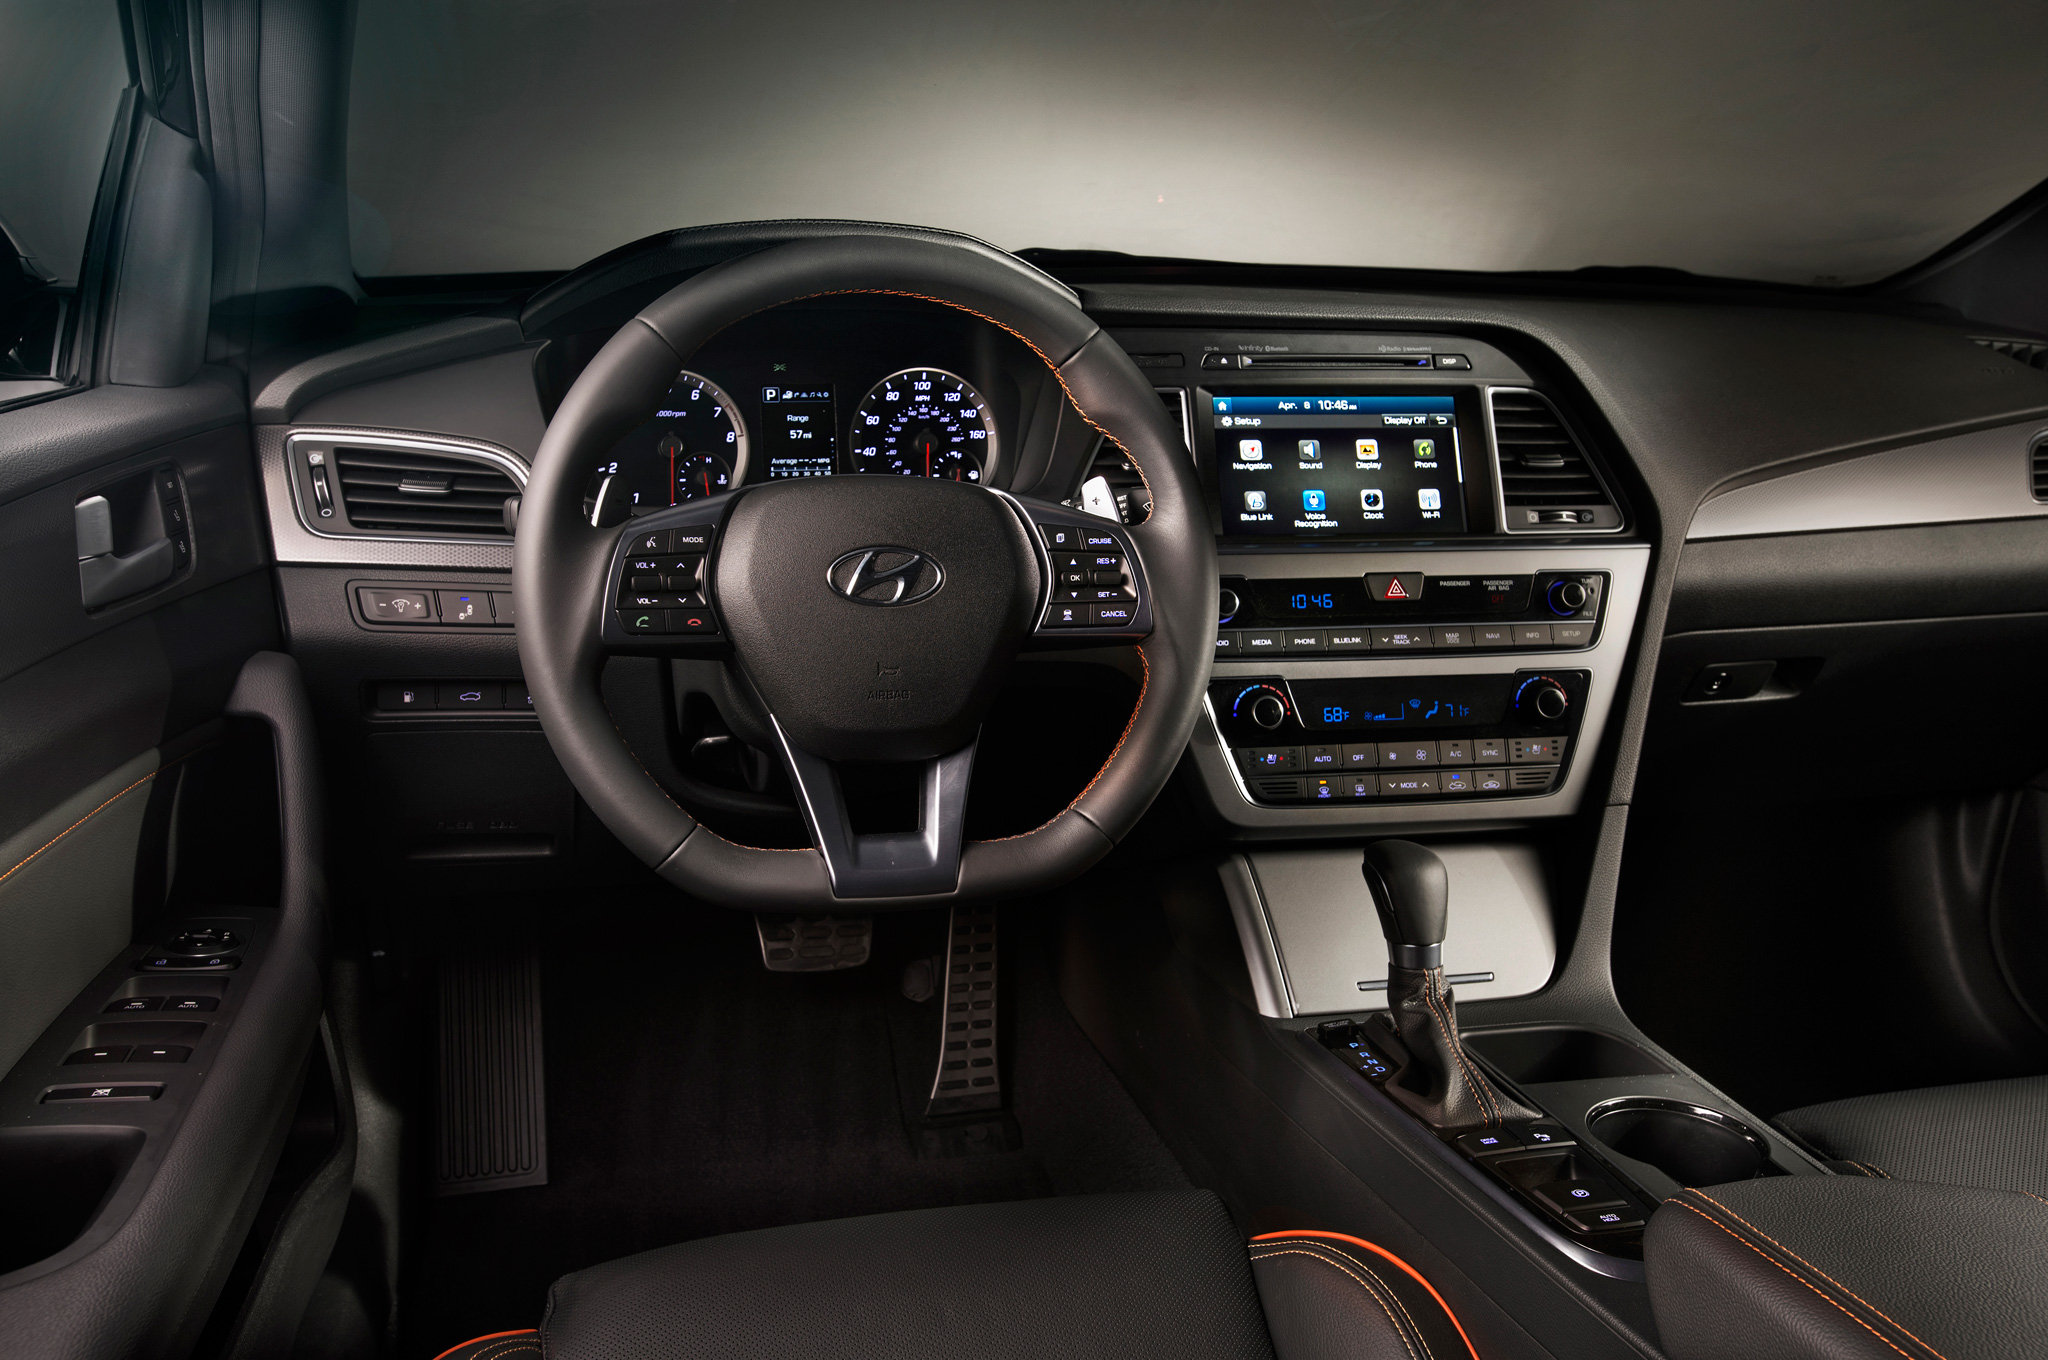 Đánh giá xe Hyundai Sonata 2015